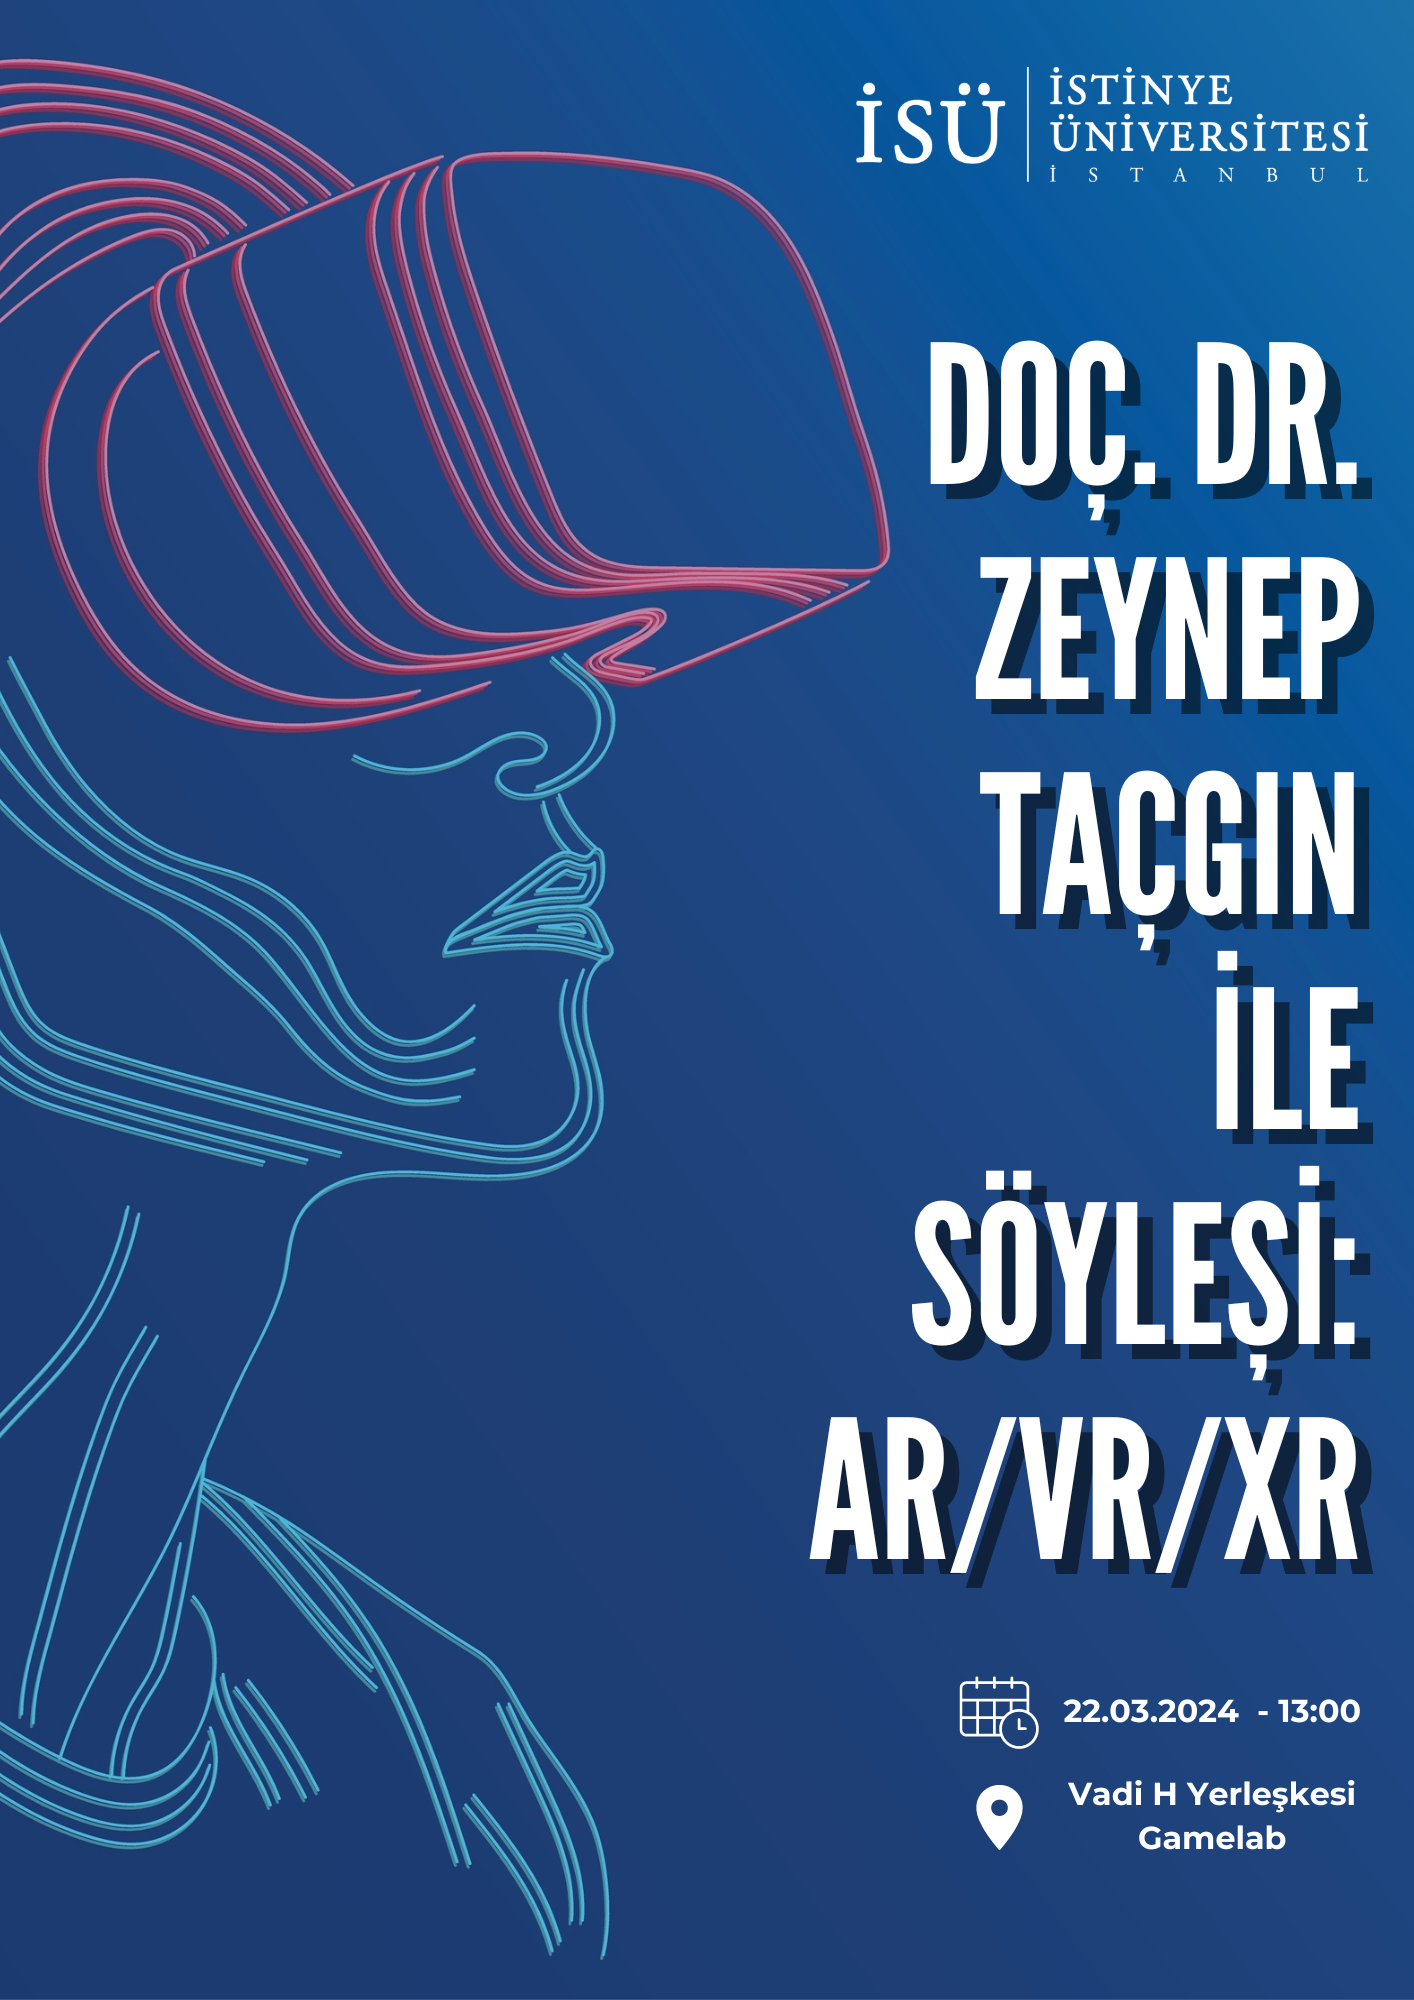 Doç. Dr. Zeynep Taçgın ile Söyleşi: AR/VR/XR